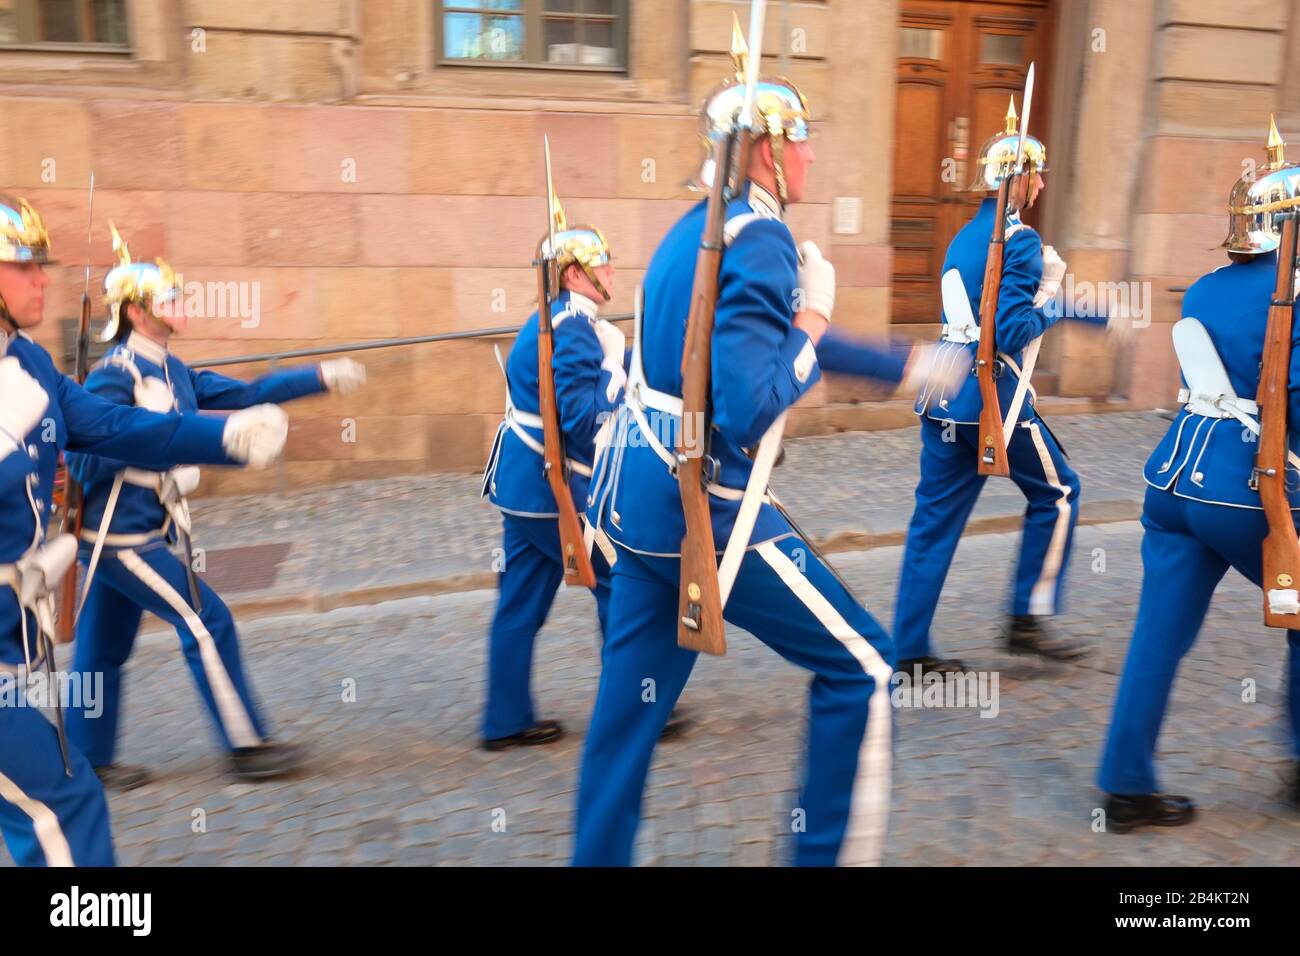 Los guardias reales, Högvakte, guardias de infantería de las Fuerzas Armadas suecas encargados de proteger a la familia real sueca, Estocolmo, Suecia Foto de stock